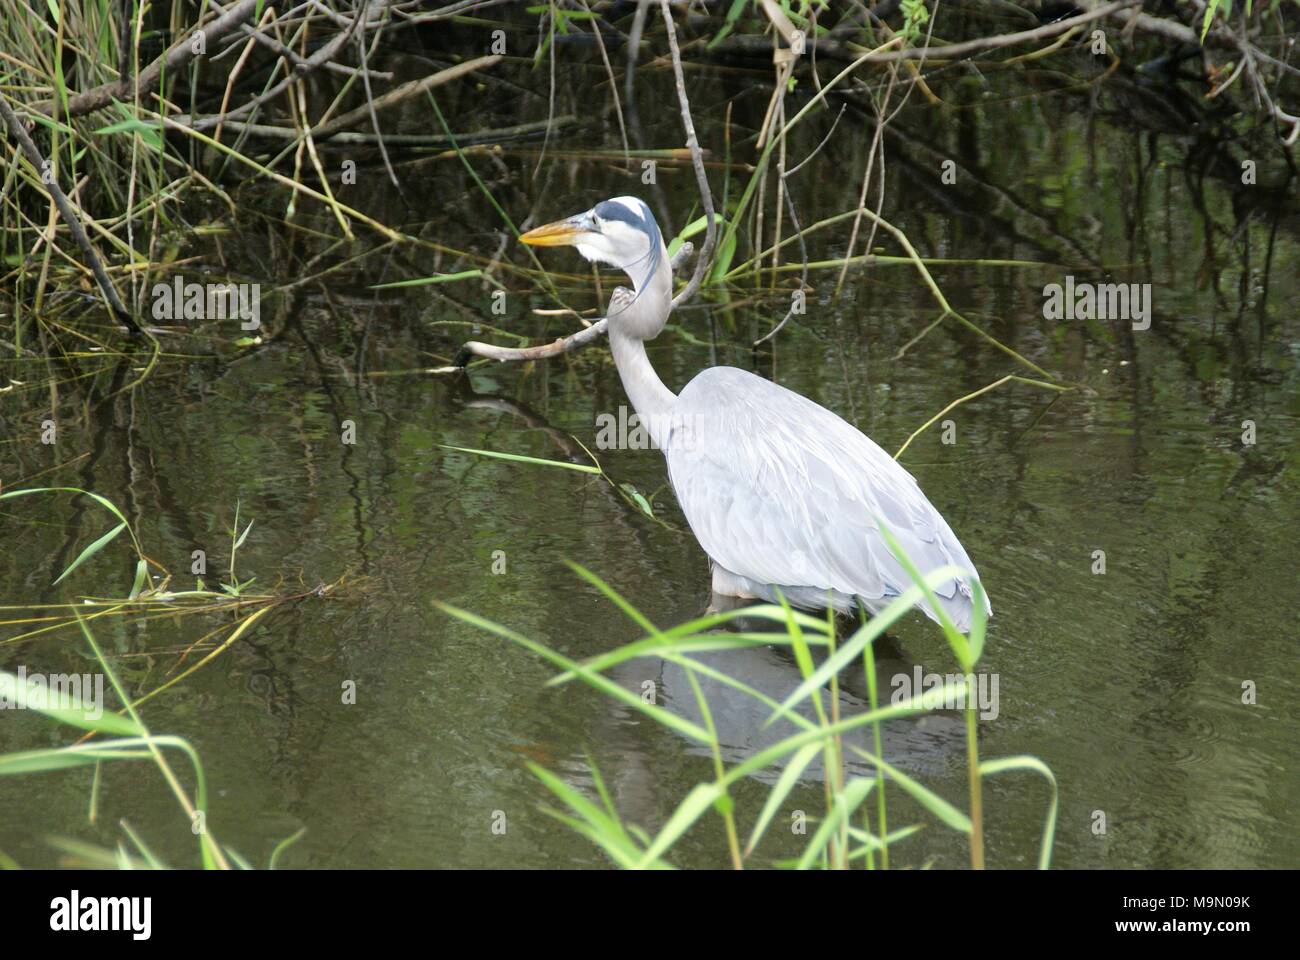 Photos prises lors d'un voyage dans les Everglades Floride US Banque D'Images